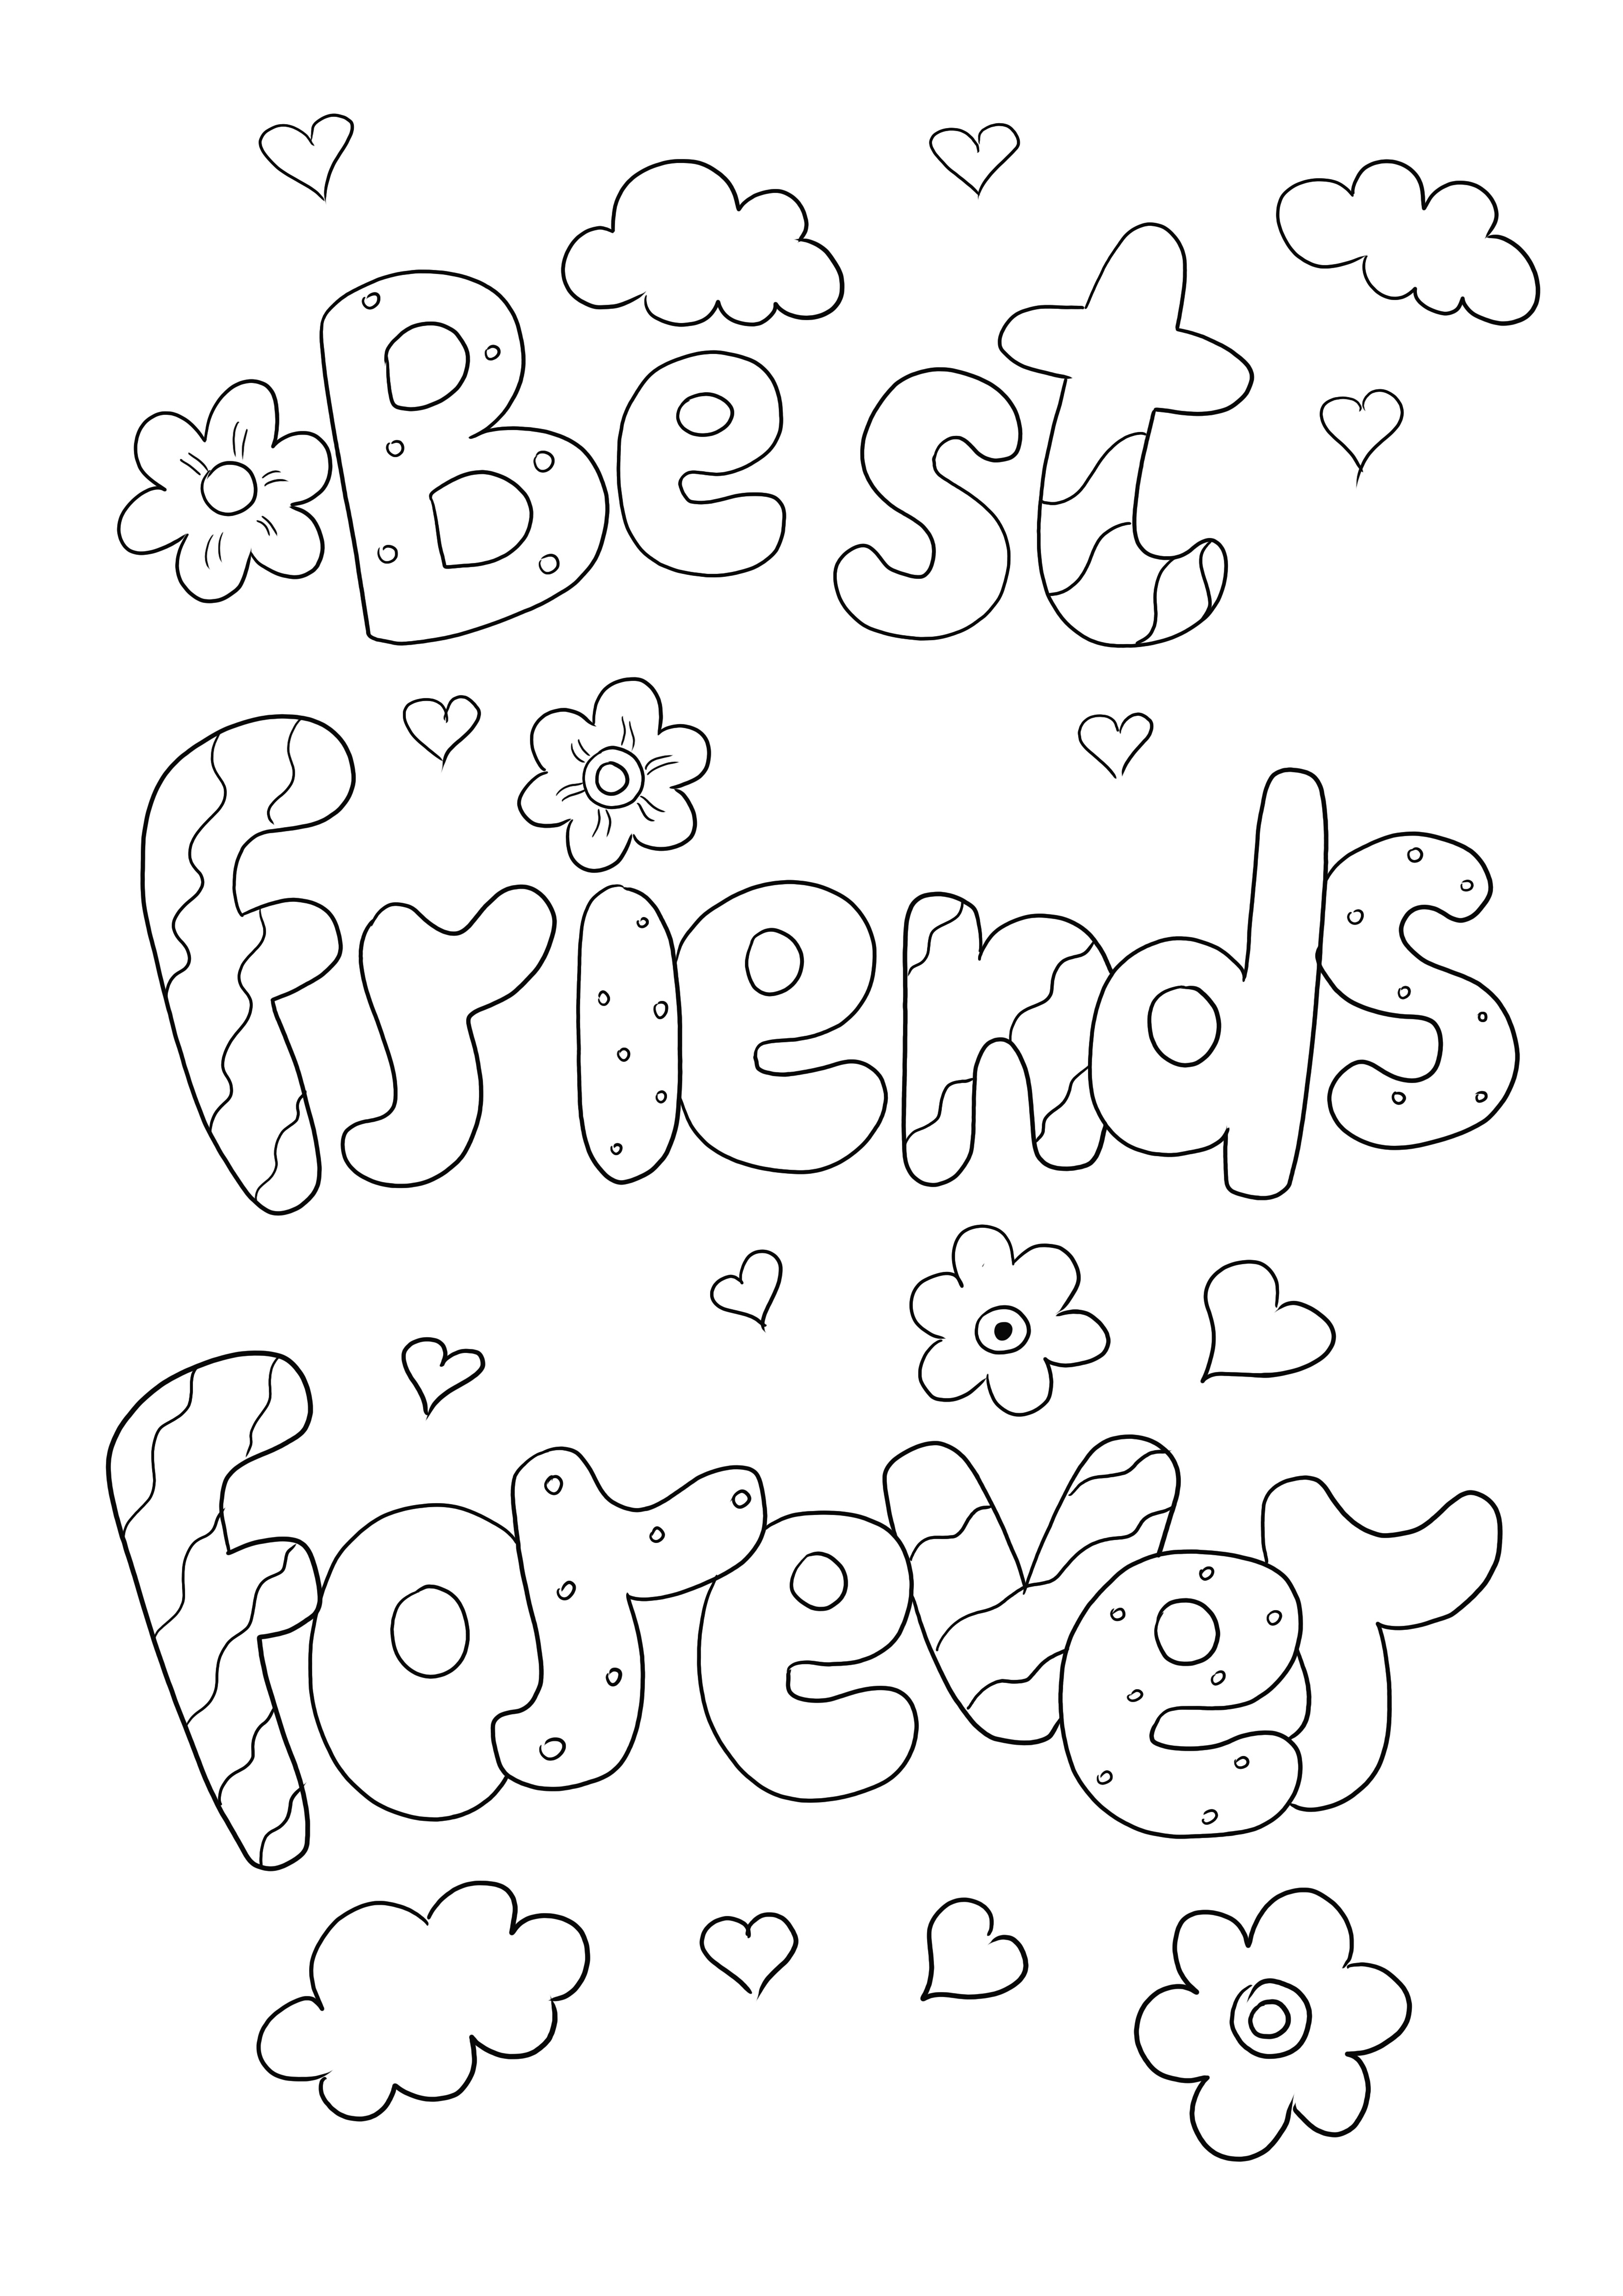 Imaginea de colorat Best Friends Forever pentru descărcare gratuită sau imprimare directă